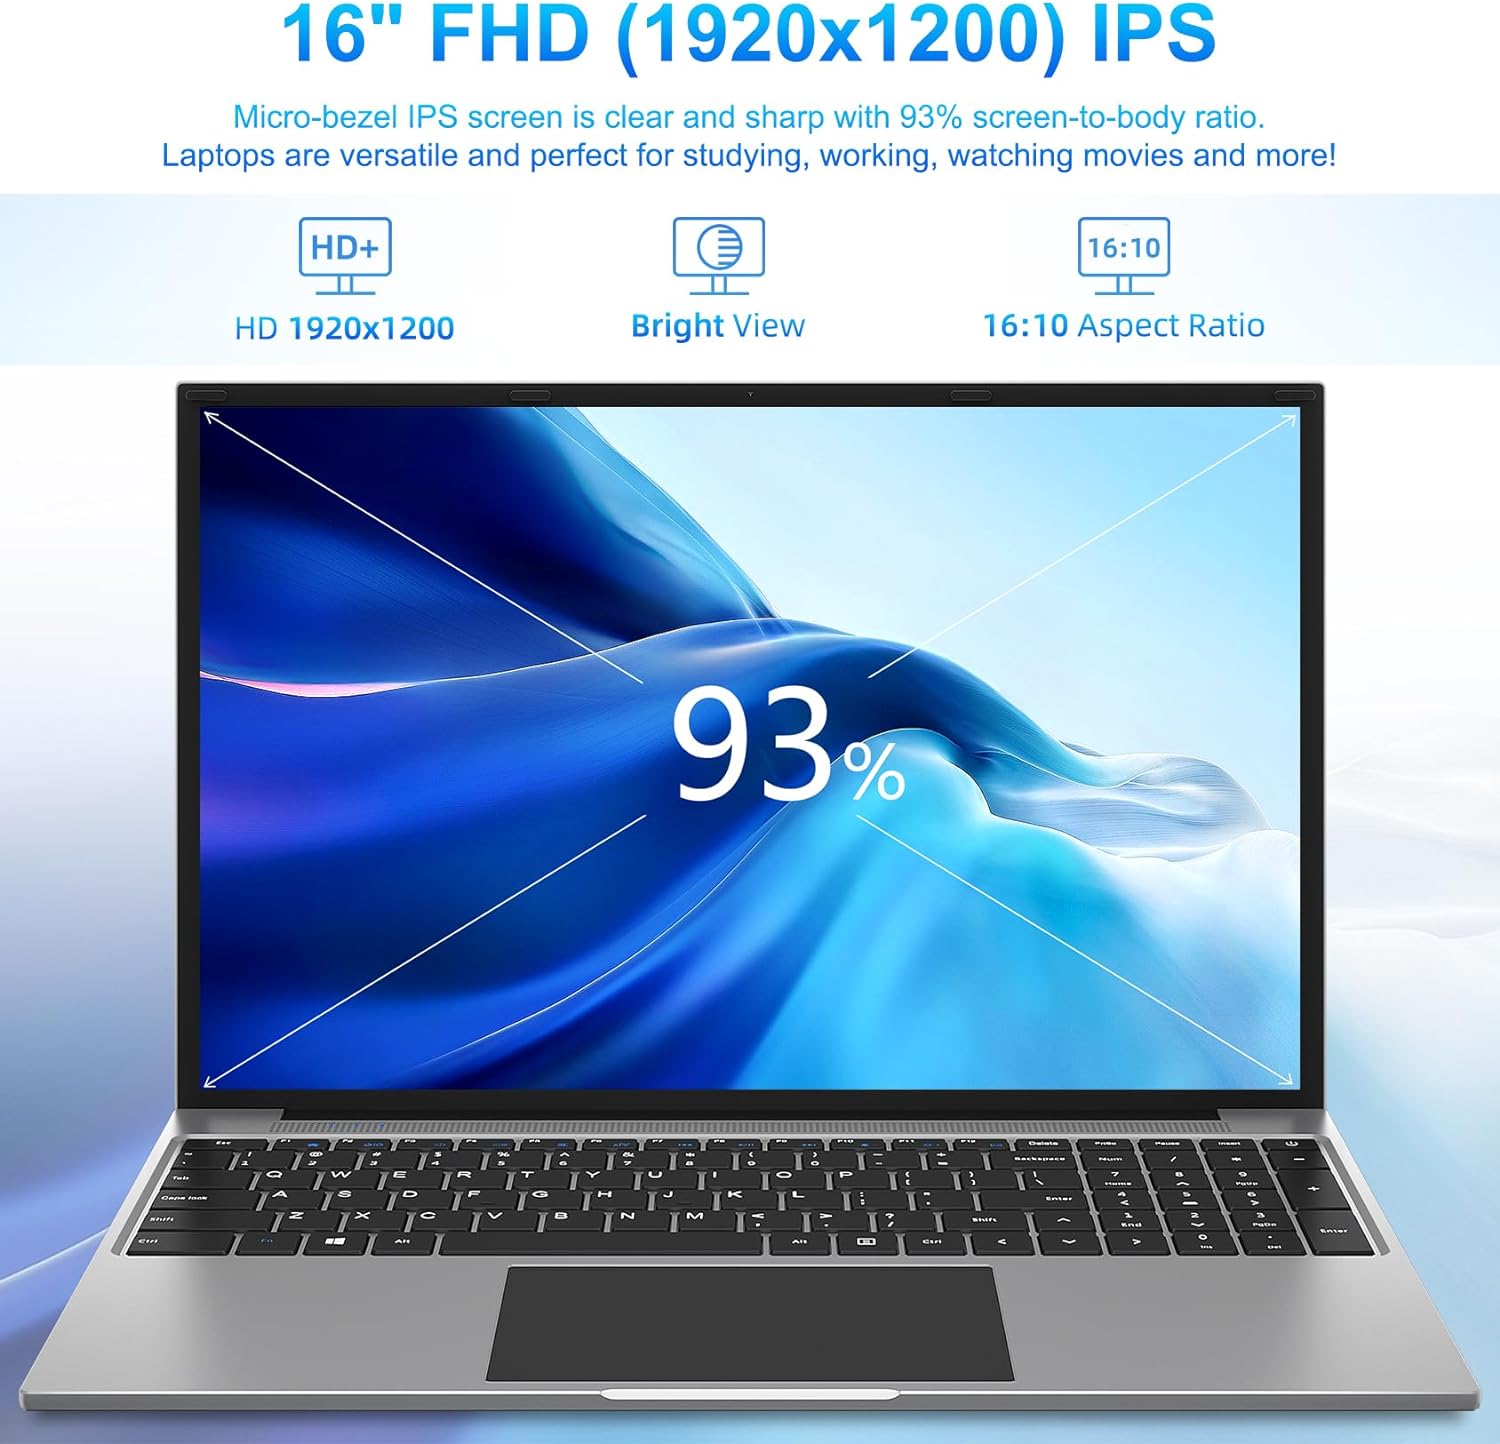 16-inch FHD (1920x1200) IPS display,